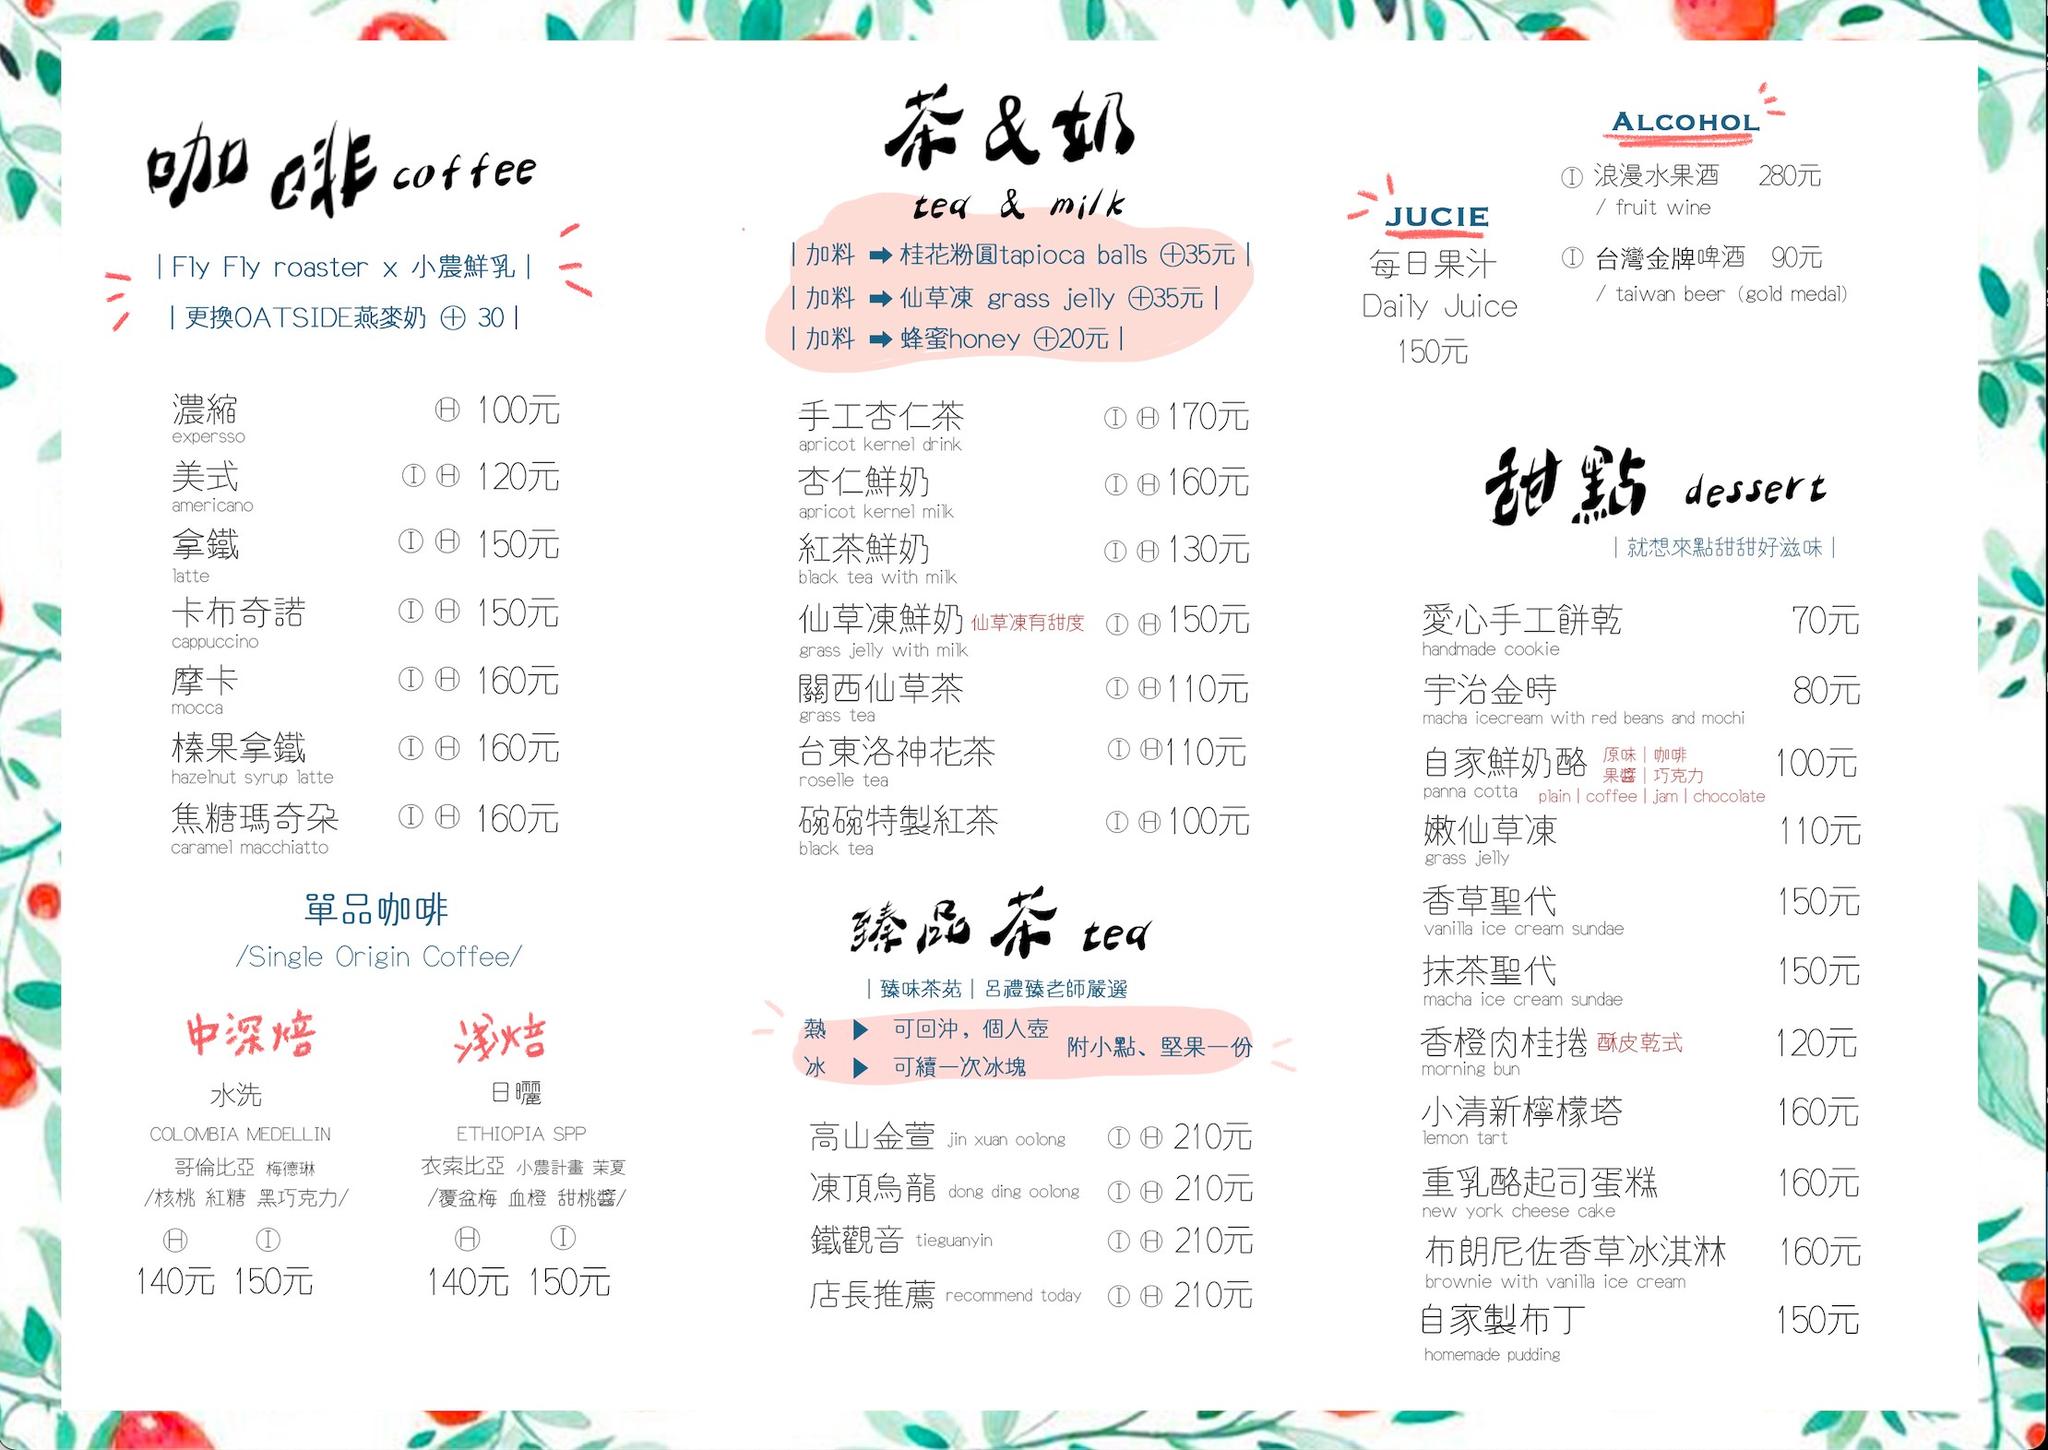 【一碗來】華山文創園區餐廳推薦，台灣傳統美食、親子友善空間